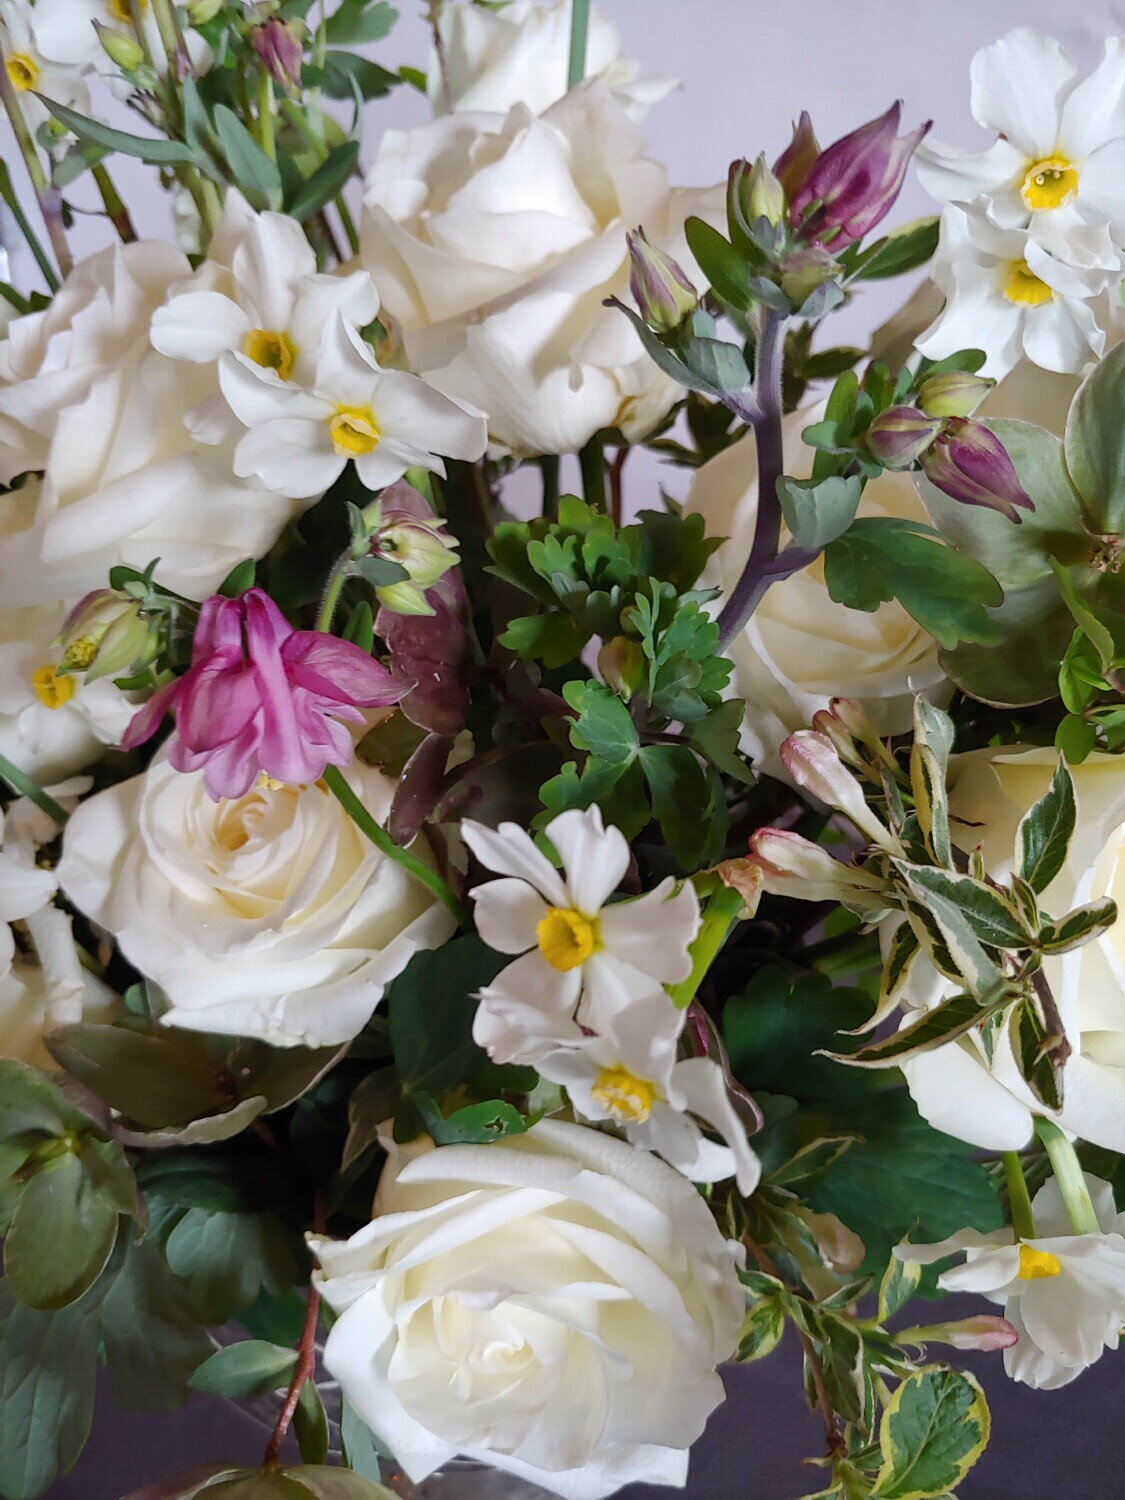 narcissus flower arrangement.jpg